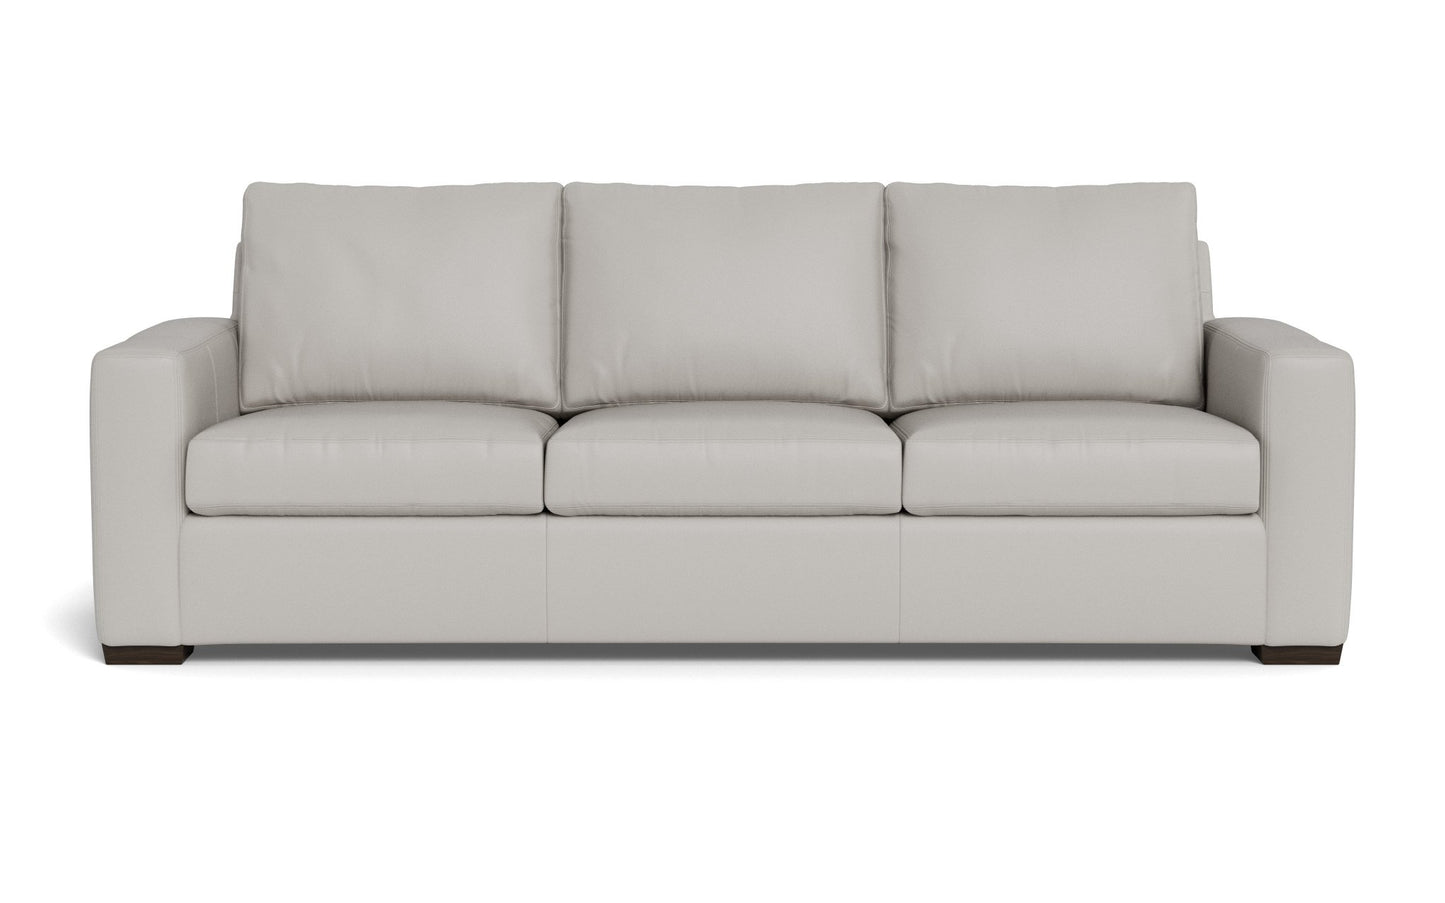 Mesa Leather Estate Sofa